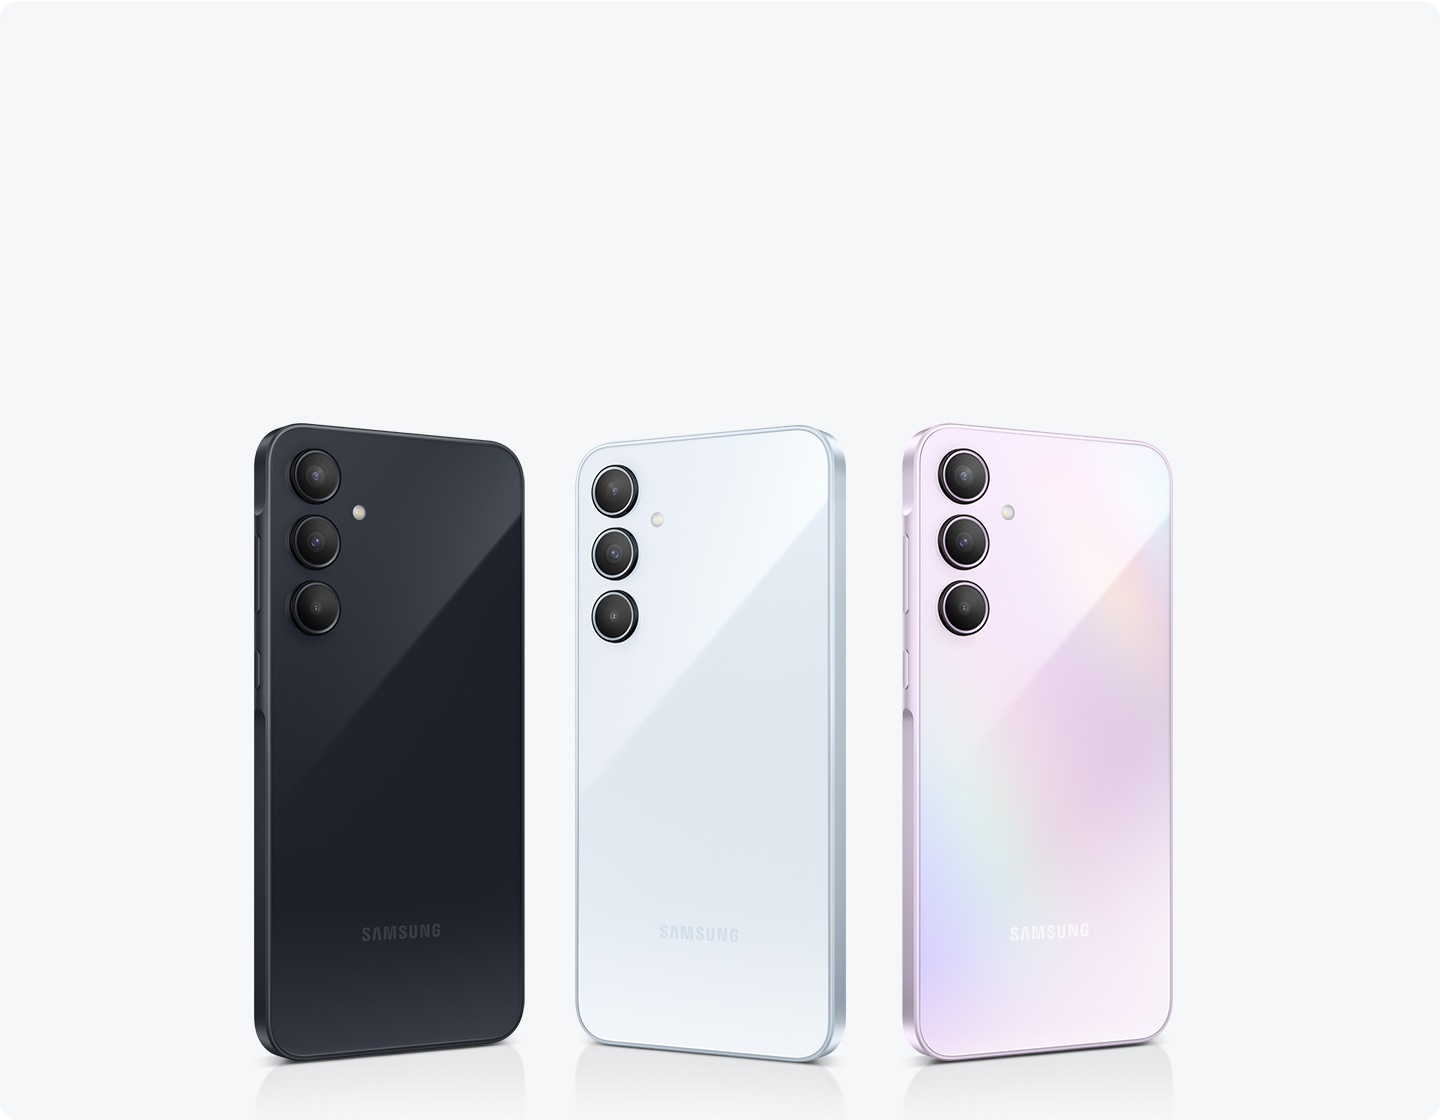 สมาร์ทโฟน Samsung สี่เครื่องสีต่าง ๆ ที่เรียงต่อกัน ได้แก่ สี Awesome Navy, Awesome Iceblue, Awesome Lilac โทรศัพท์แต่ละเครื่องมีกล้อง 3 ตัวตรงด้านหลัง